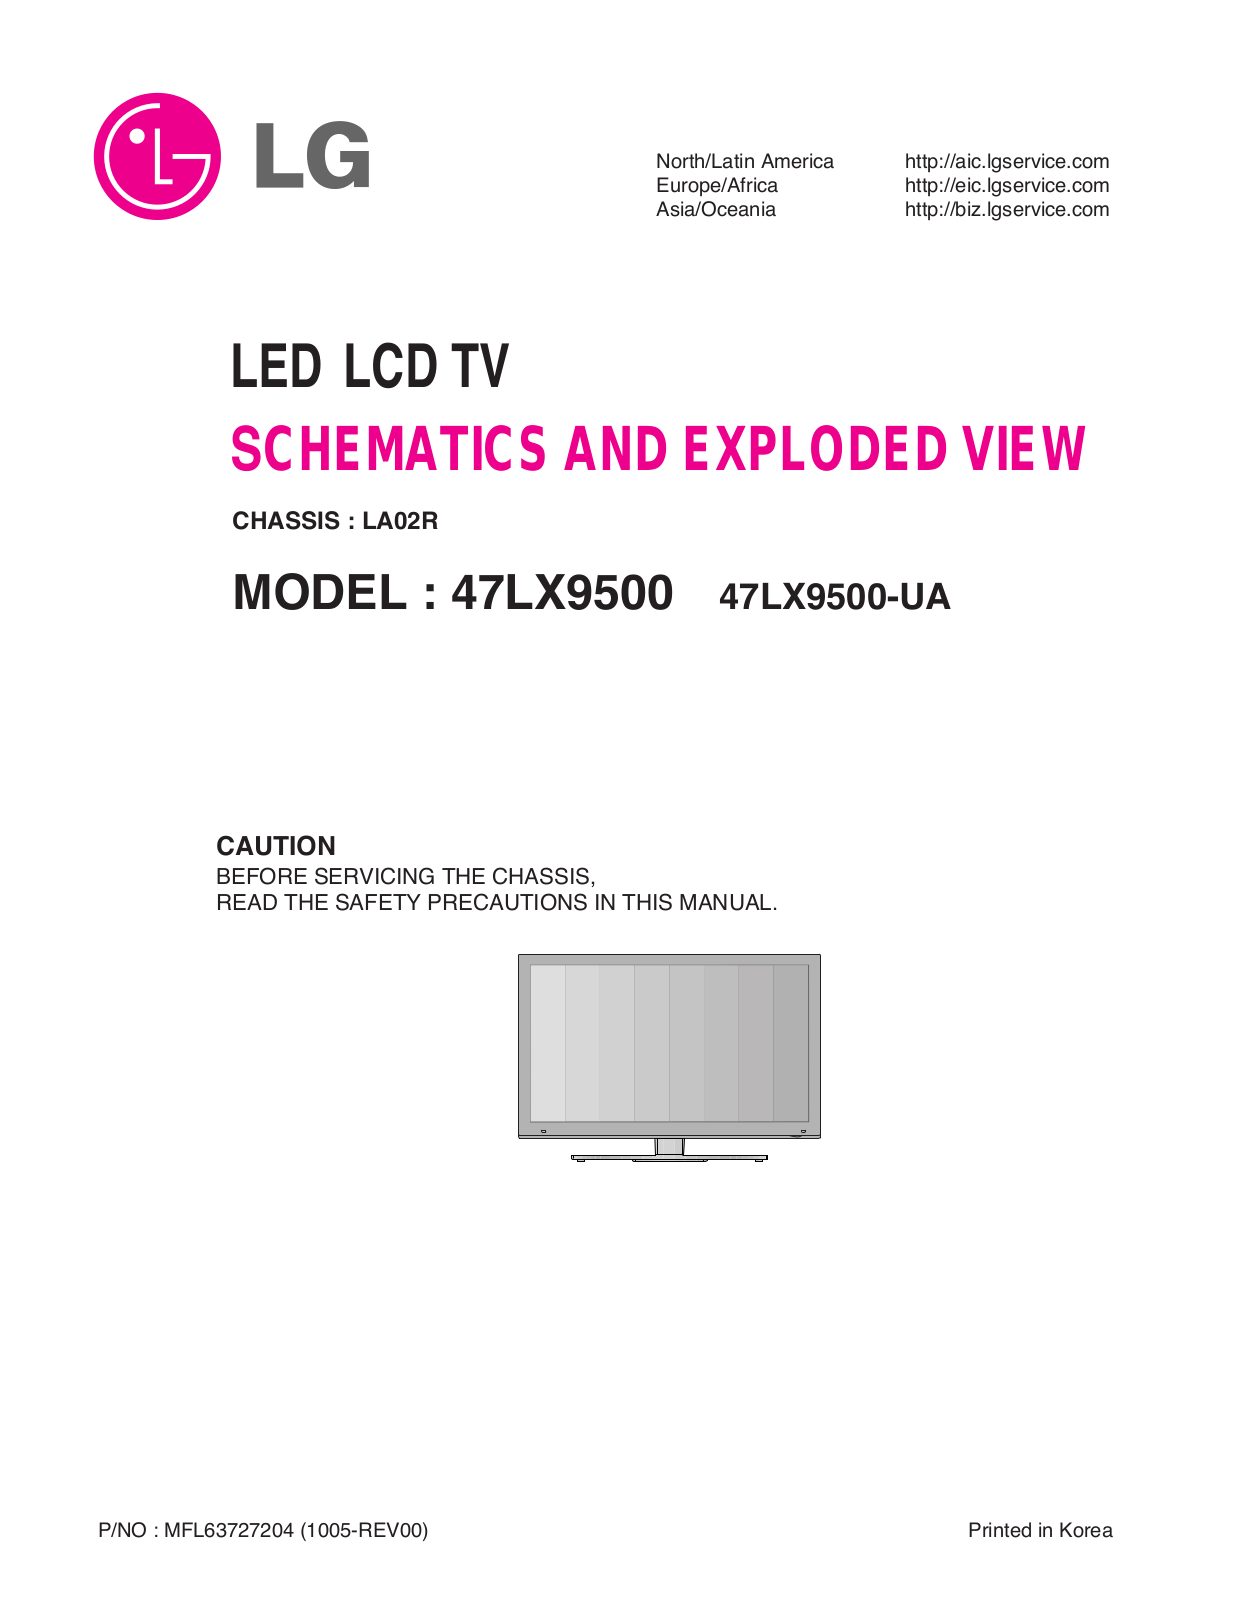 LG 47LX9500 Schematic